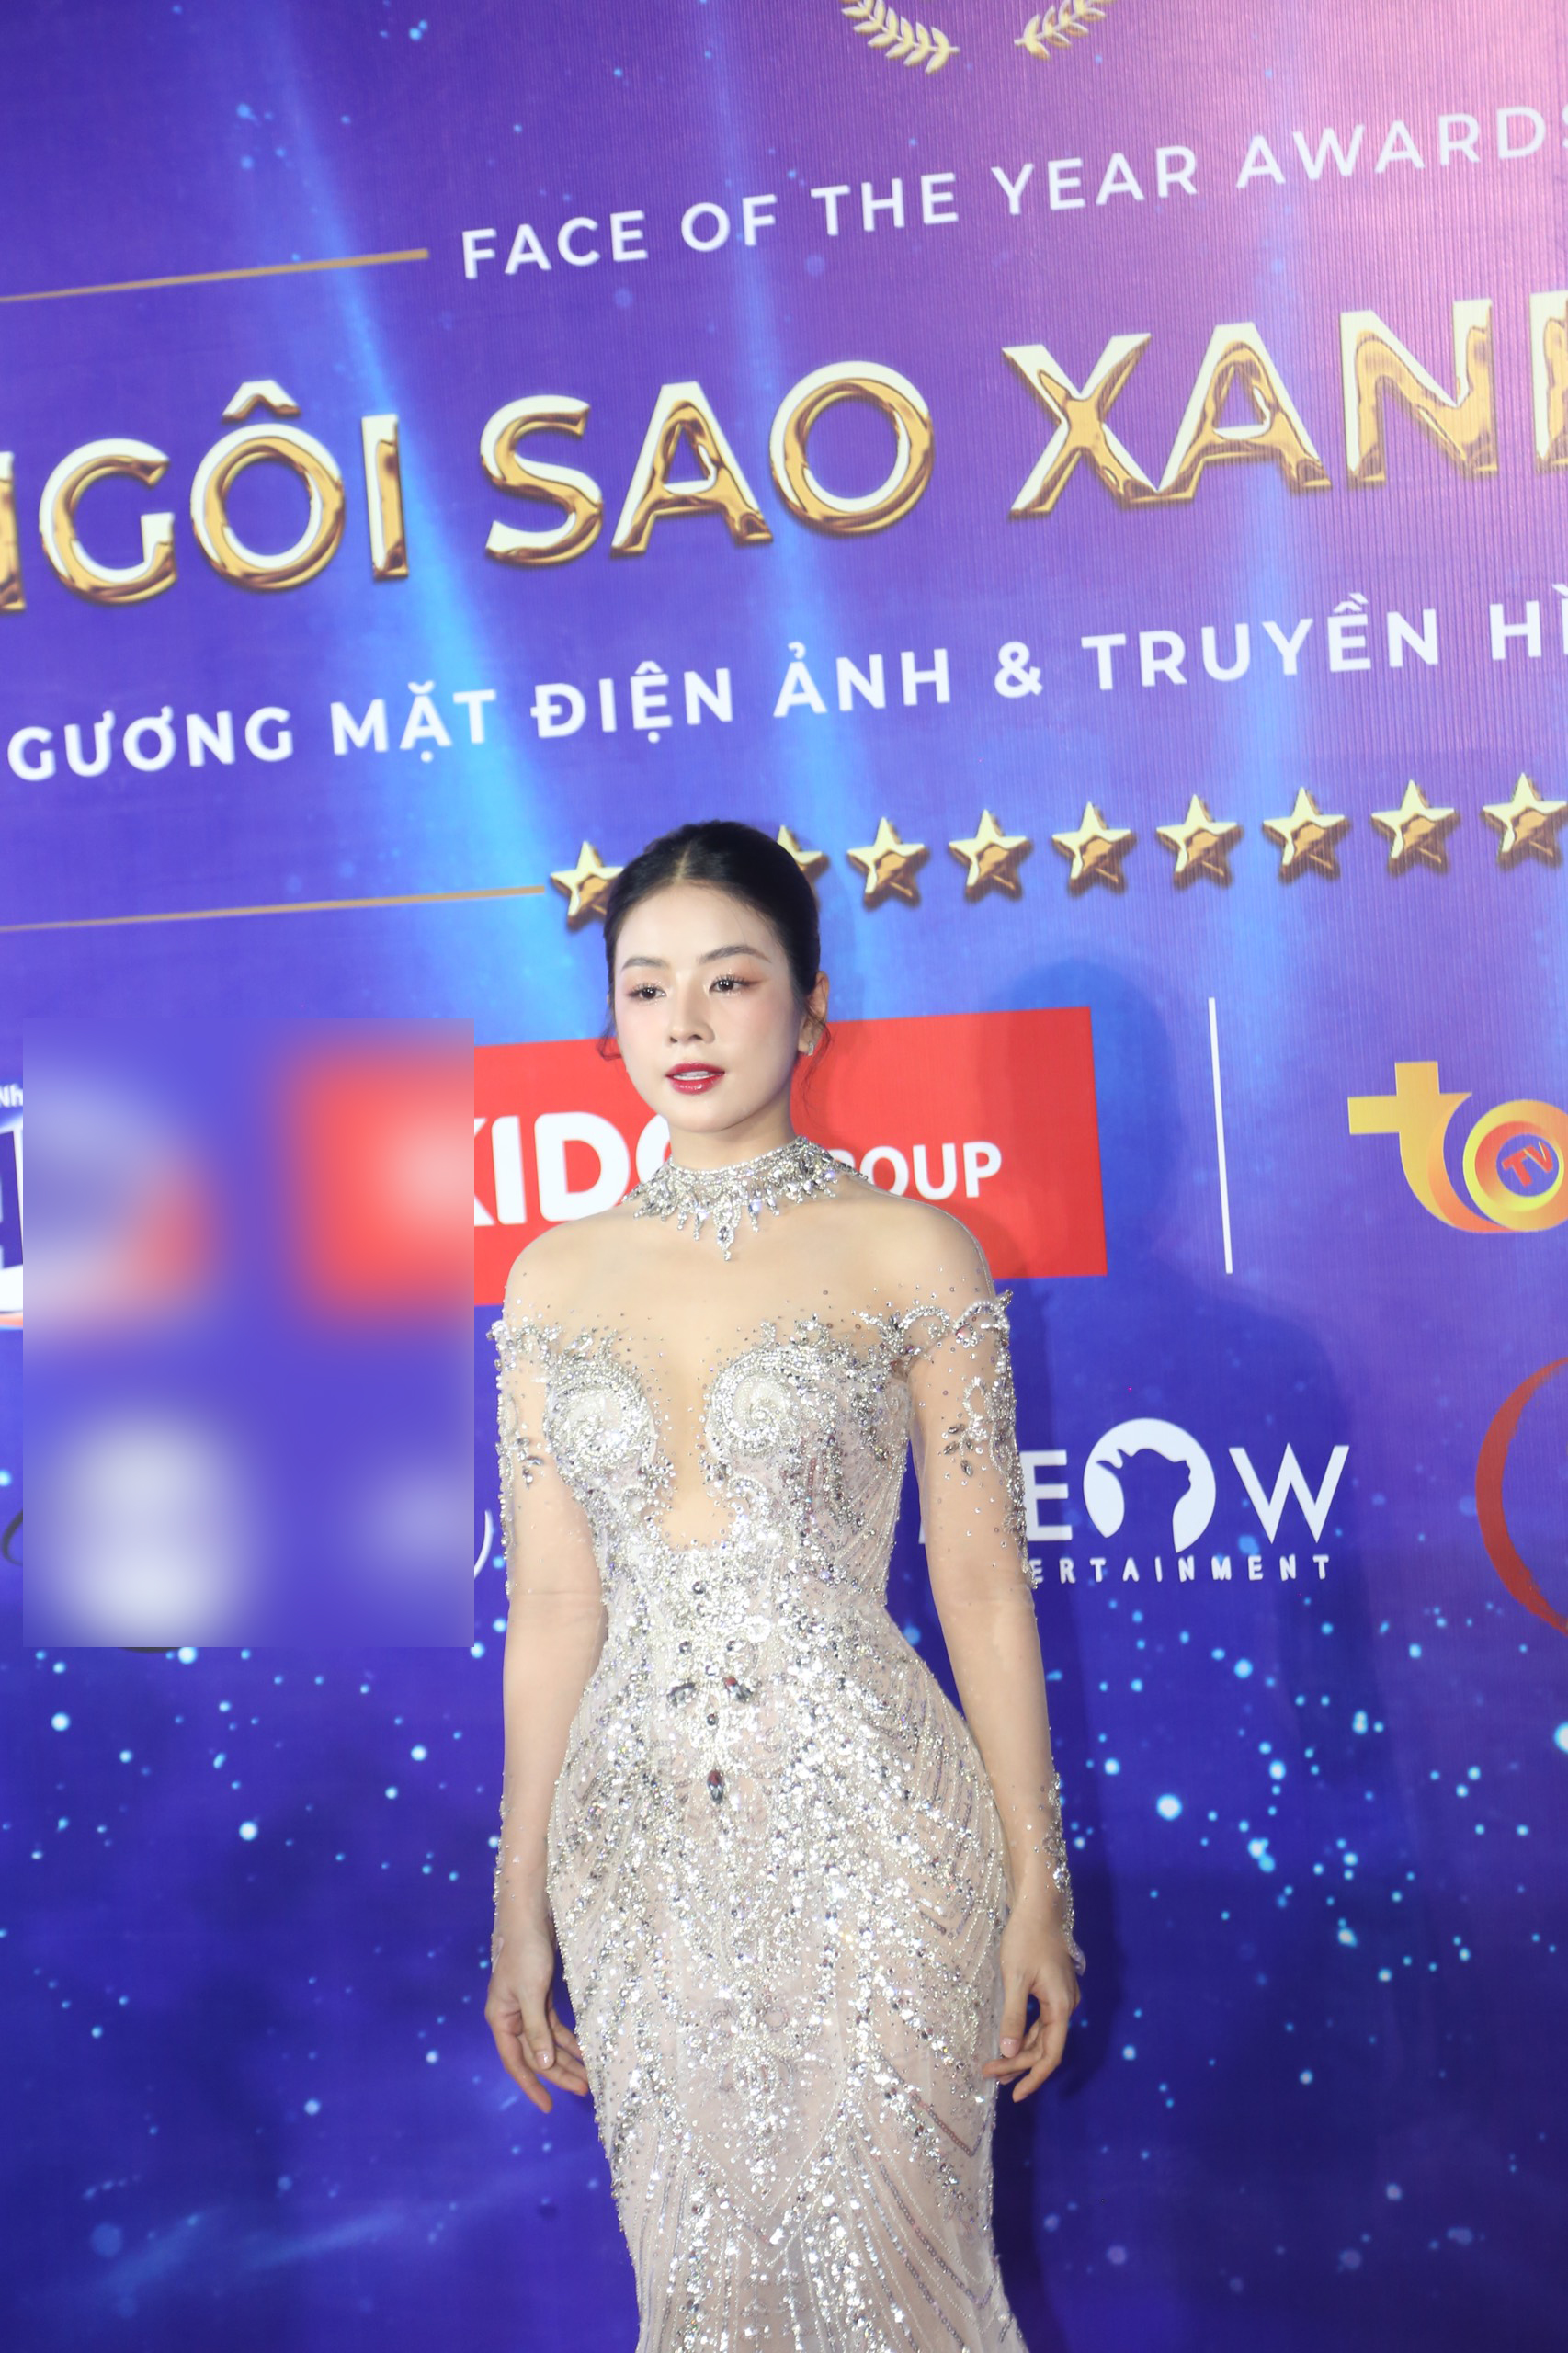 DJ Mie khoe nhan sắc như Hoa hậu, vợ một nam ca sĩ nổi tiếng lộ gương mặt khác lạ trên thảm đỏ - ảnh 3